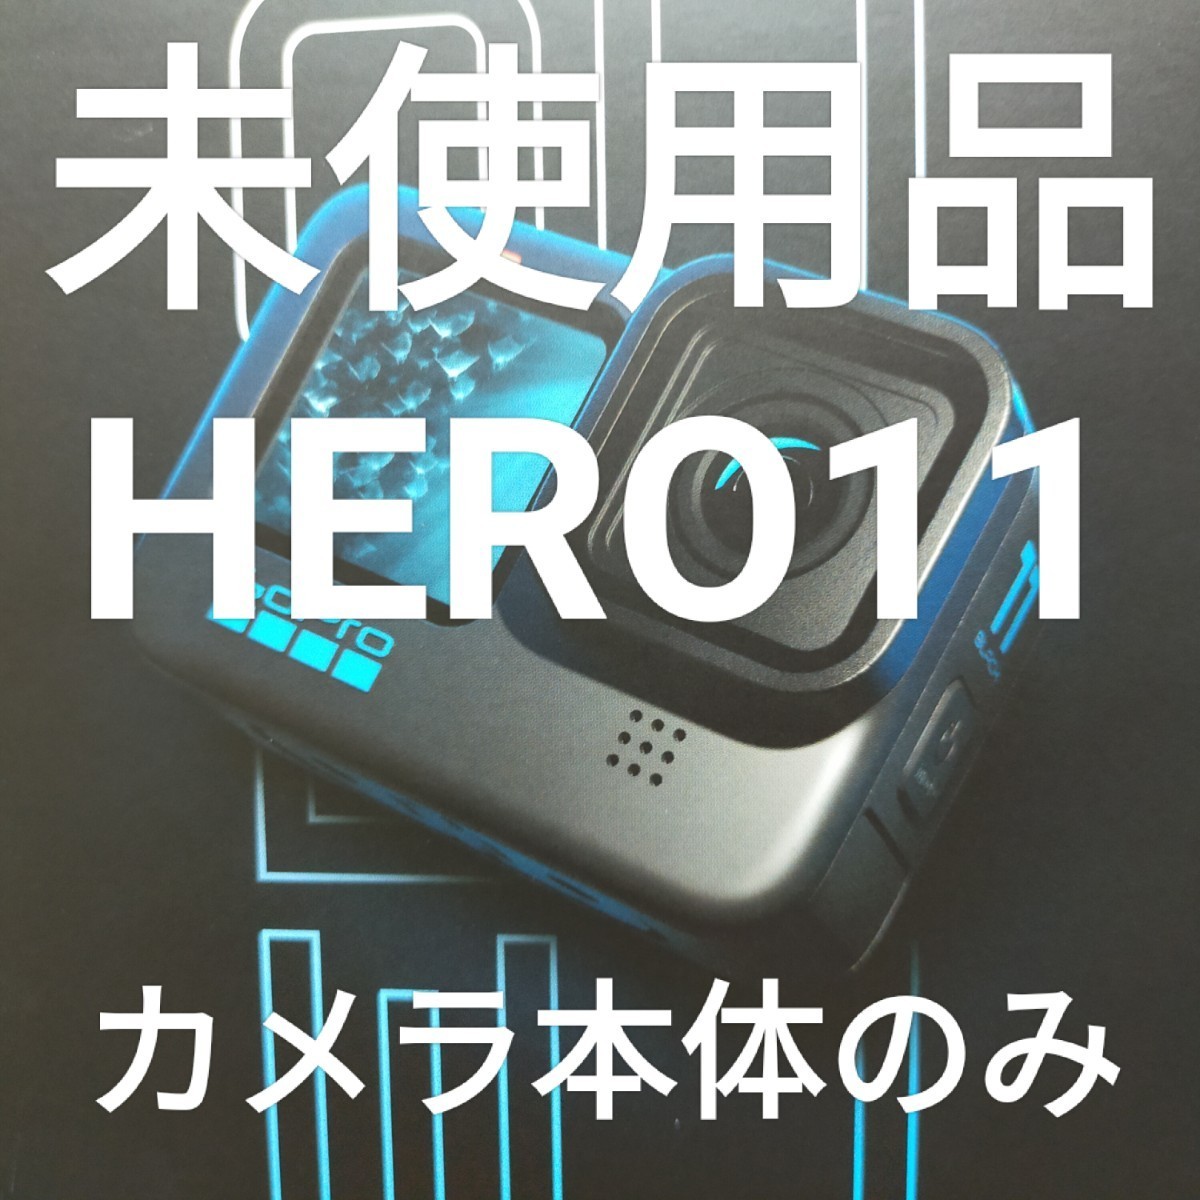 限定版 【未使用本体のみ】 Gopro HERO11 BLACK ゴープロ ヒーロー11